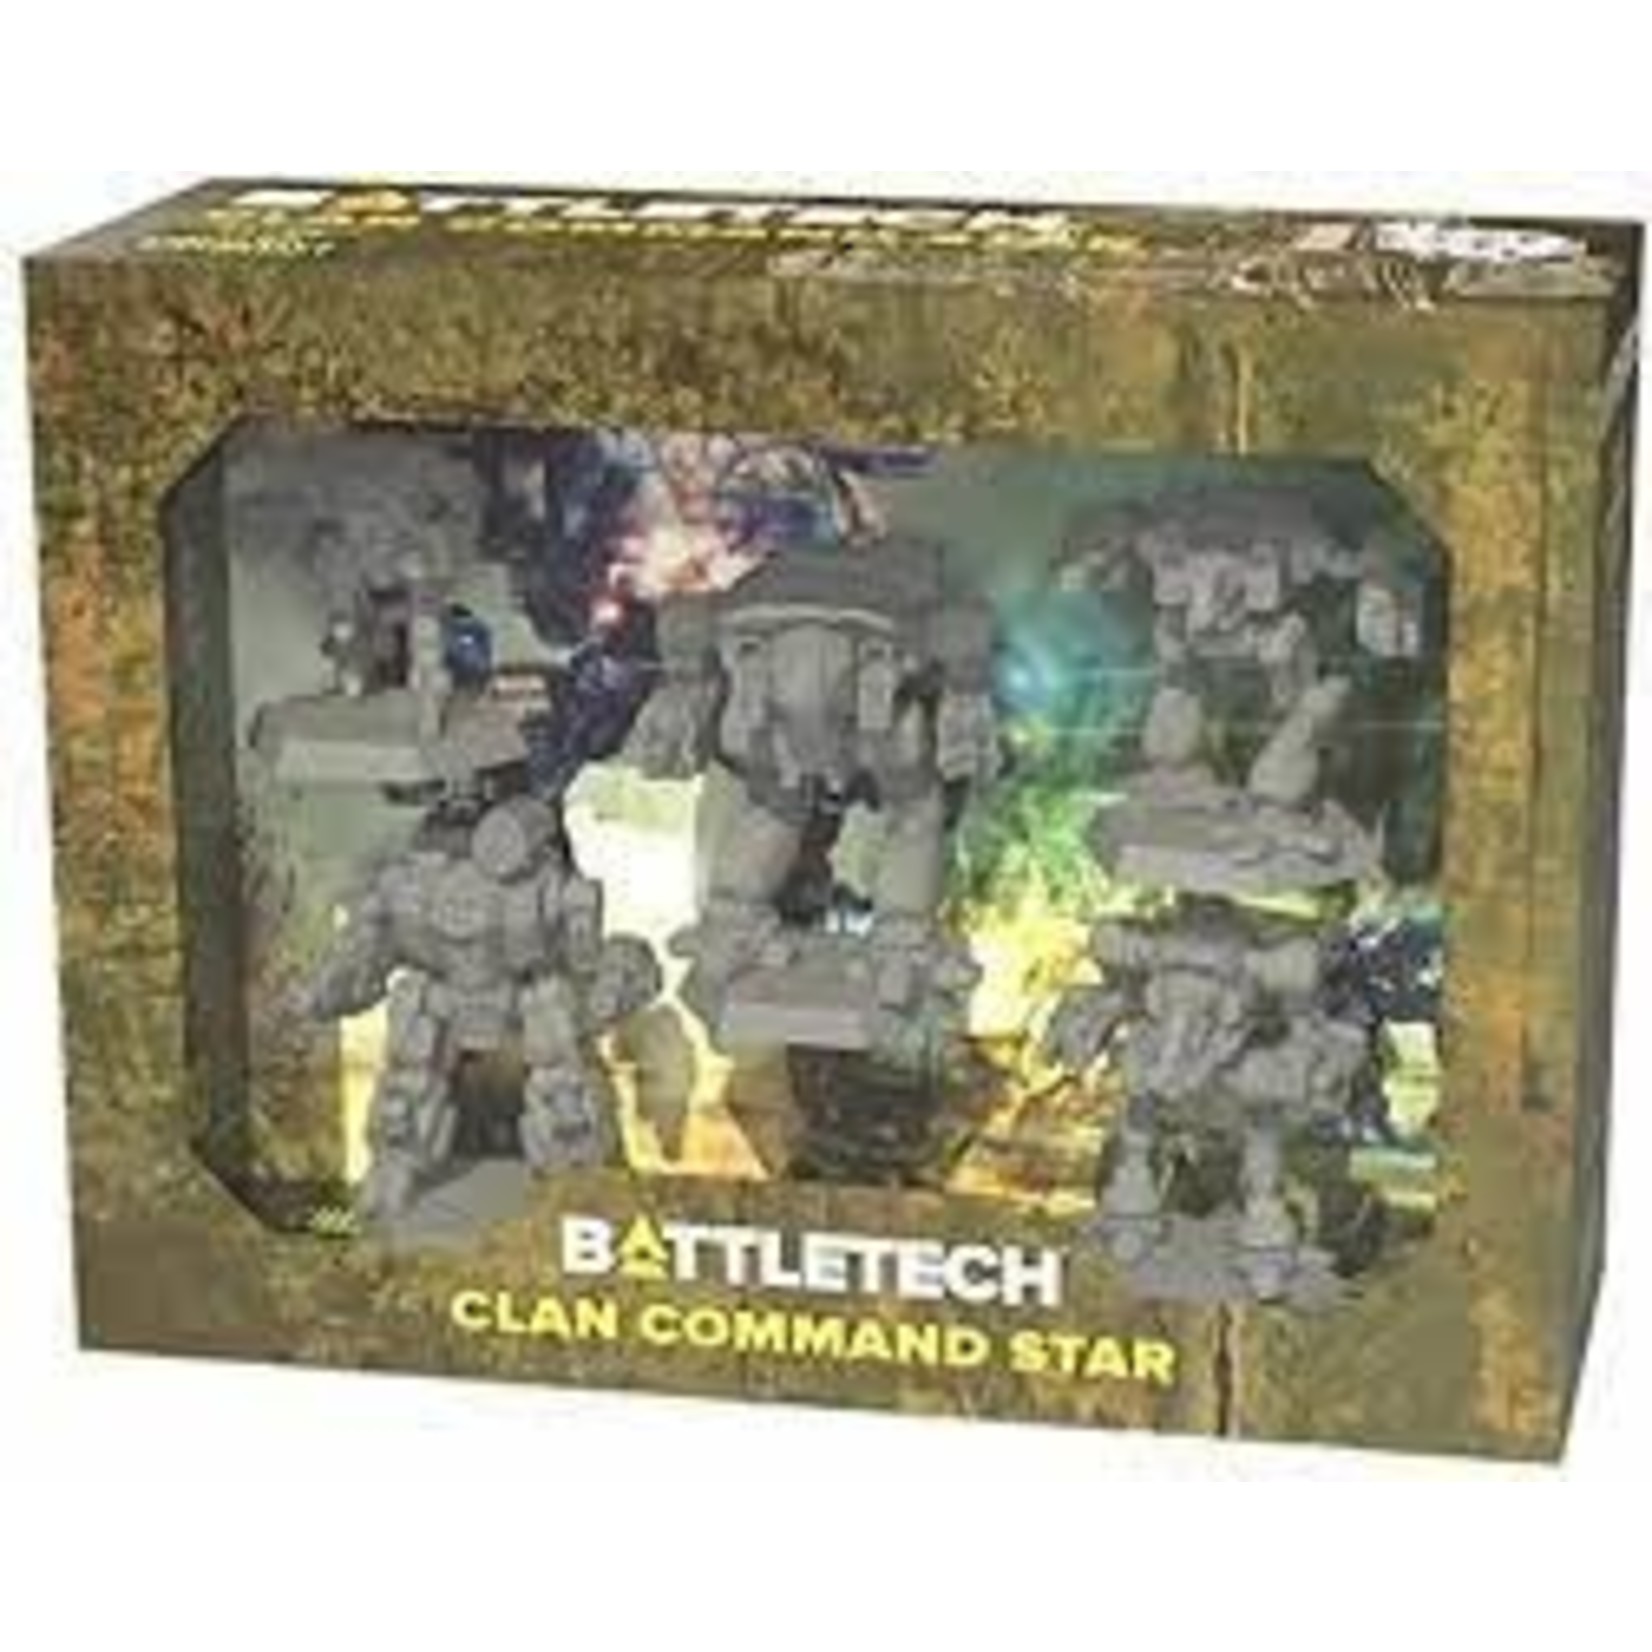 Battletech Battletech: Clan Command Star